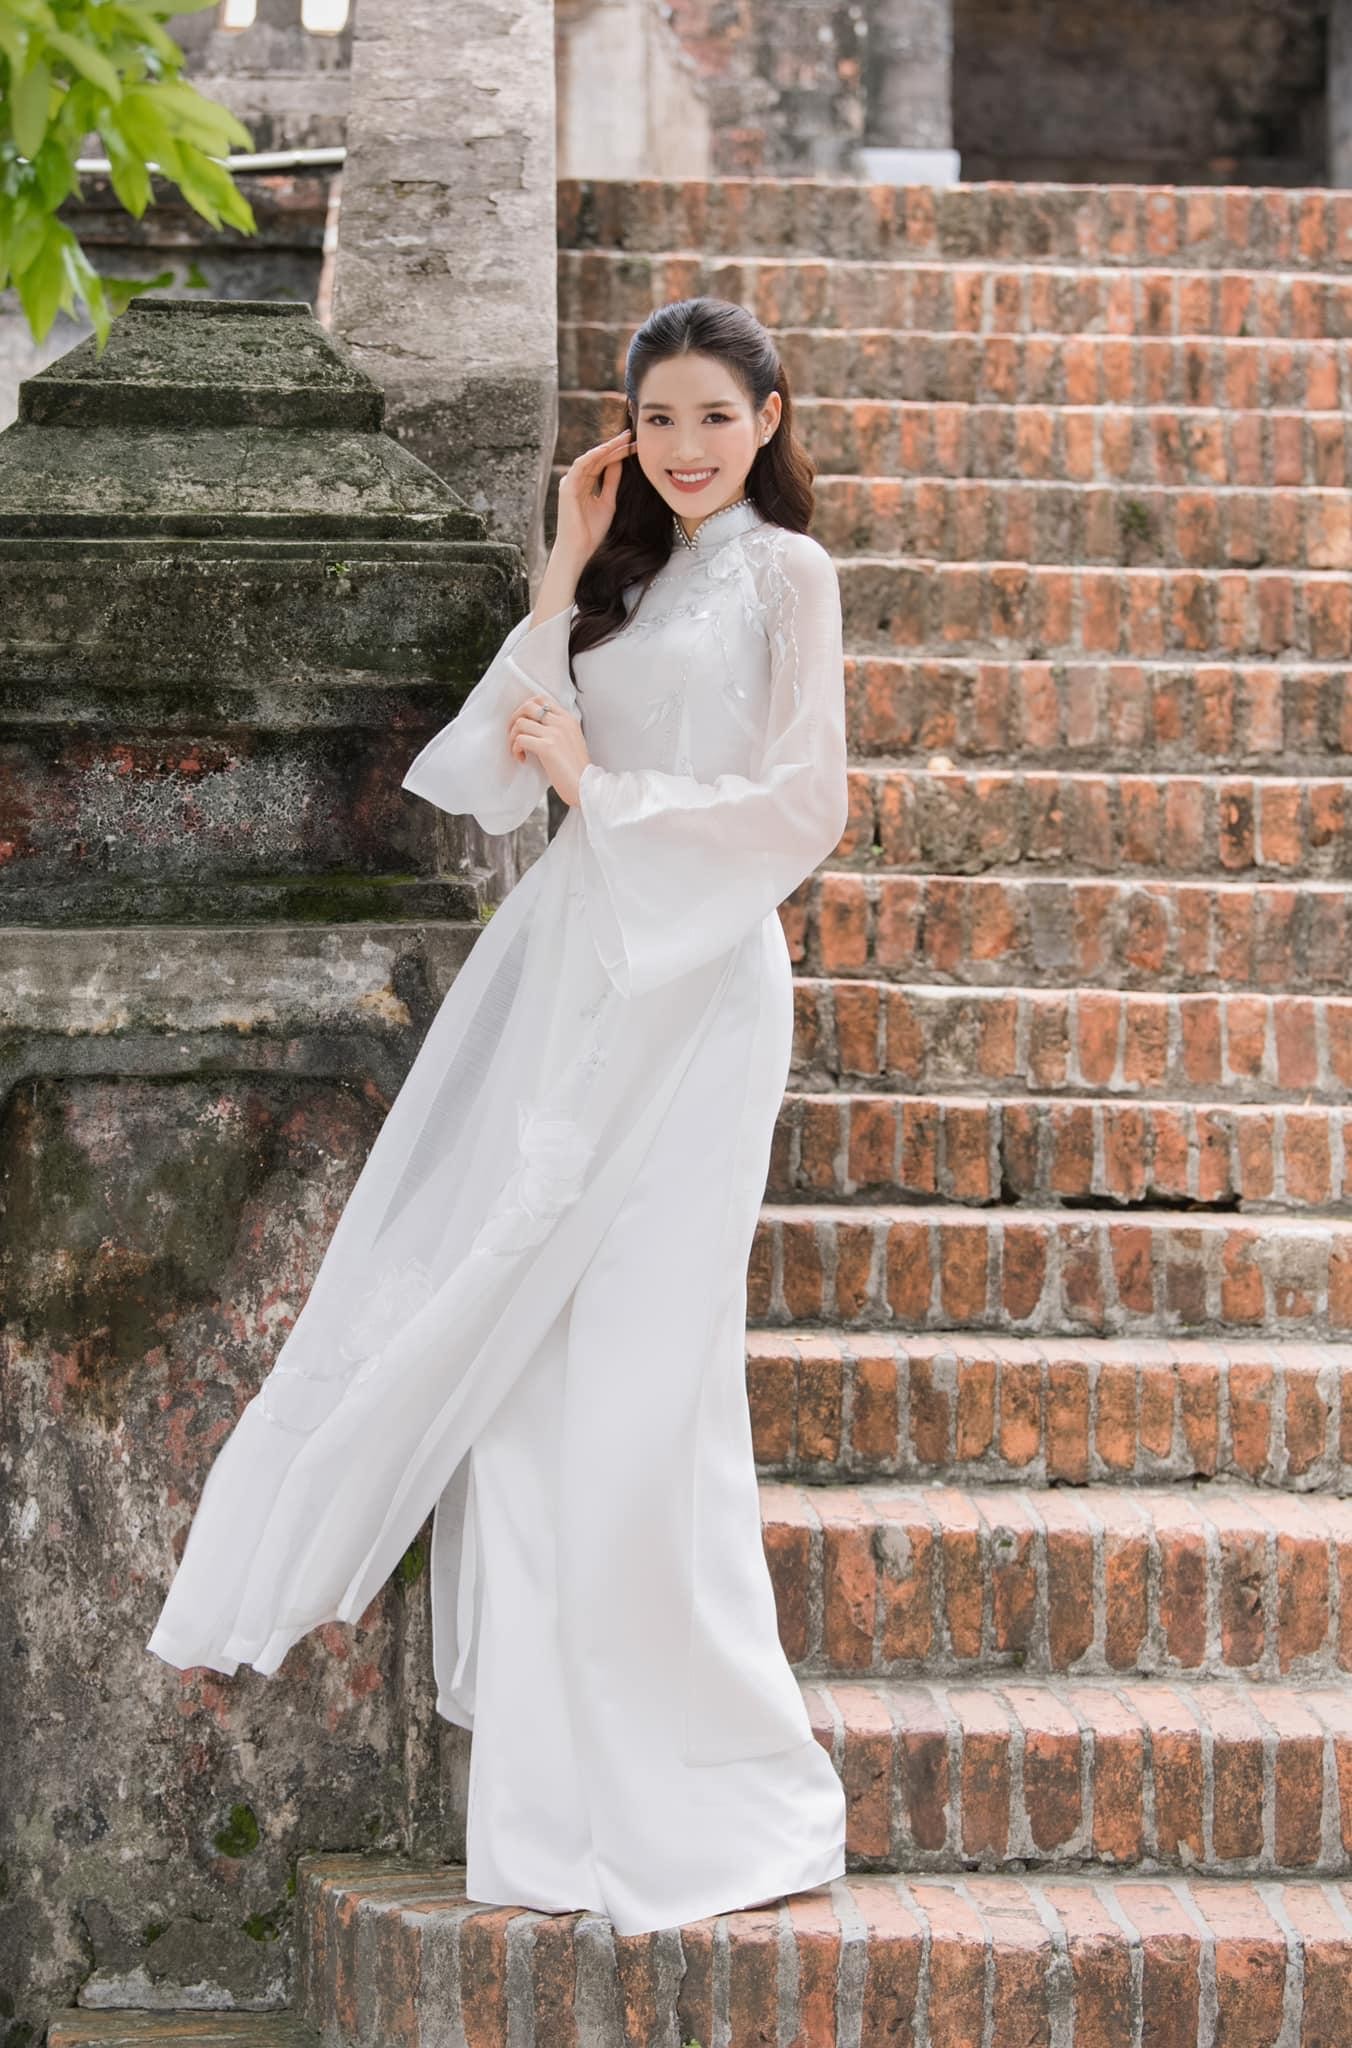 Hoa hậu Đỗ Thị Hà đẹp thuần khiết với áo dài trắng-4